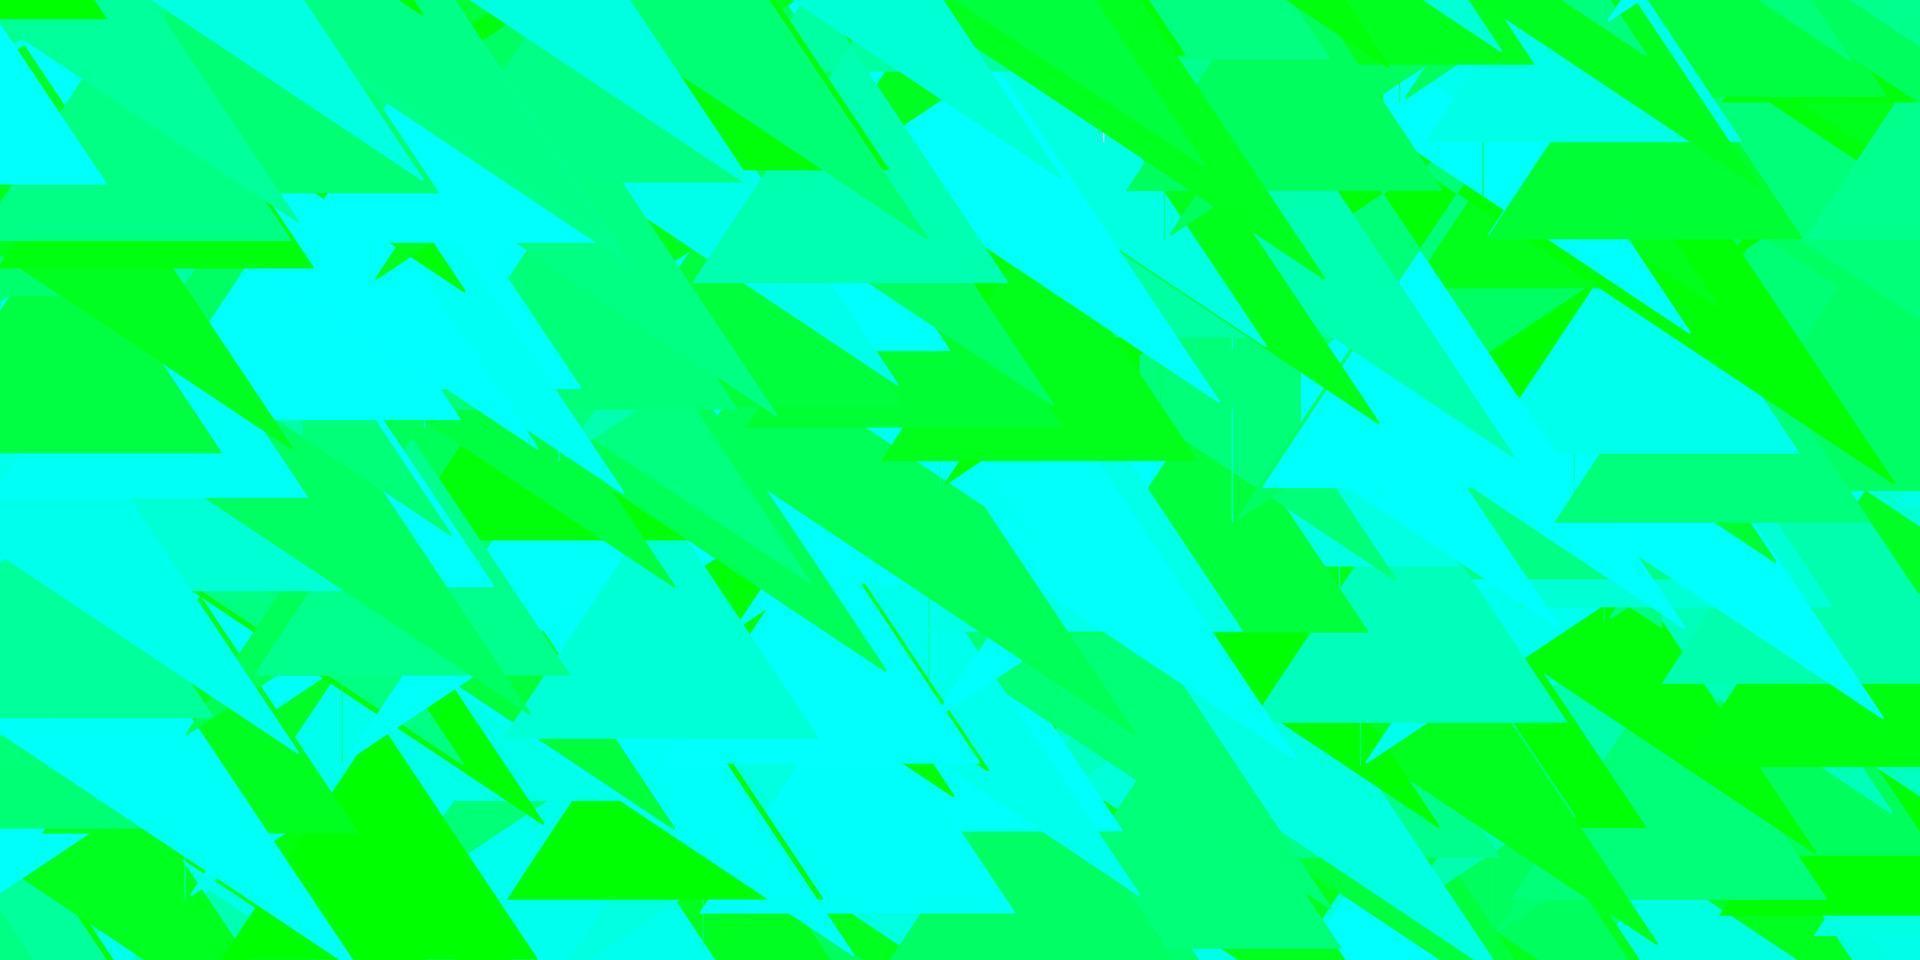 sfondo vettoriale verde chiaro con triangoli, linee.